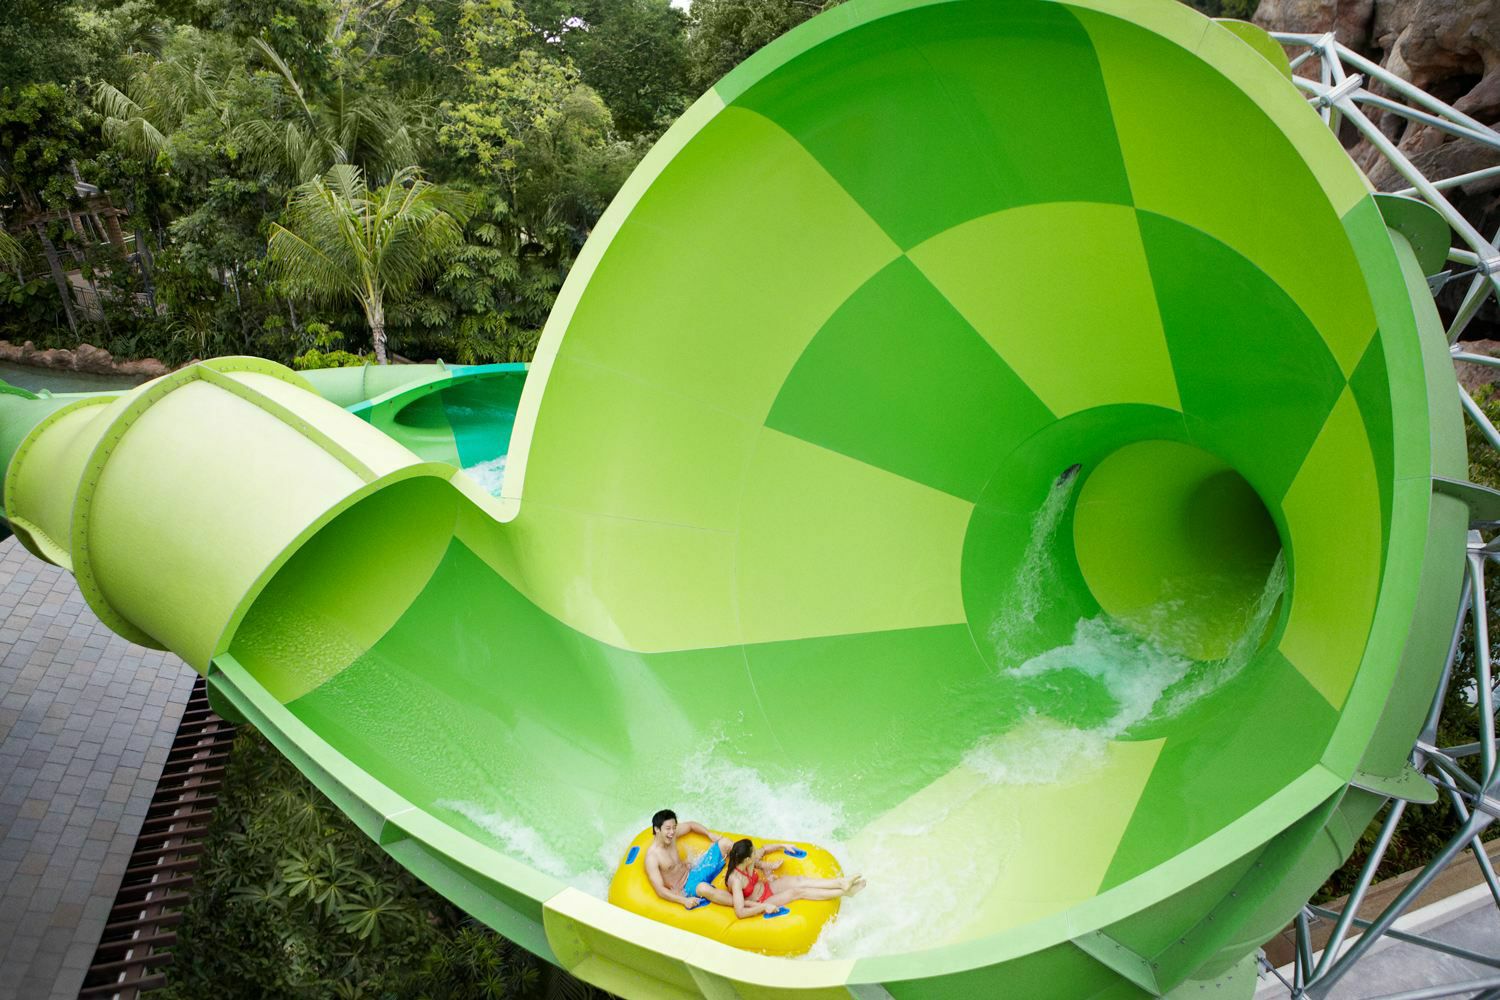 新加坡圣淘沙水上探险乐园门票 - 14个主题玩水区 - Klook客路